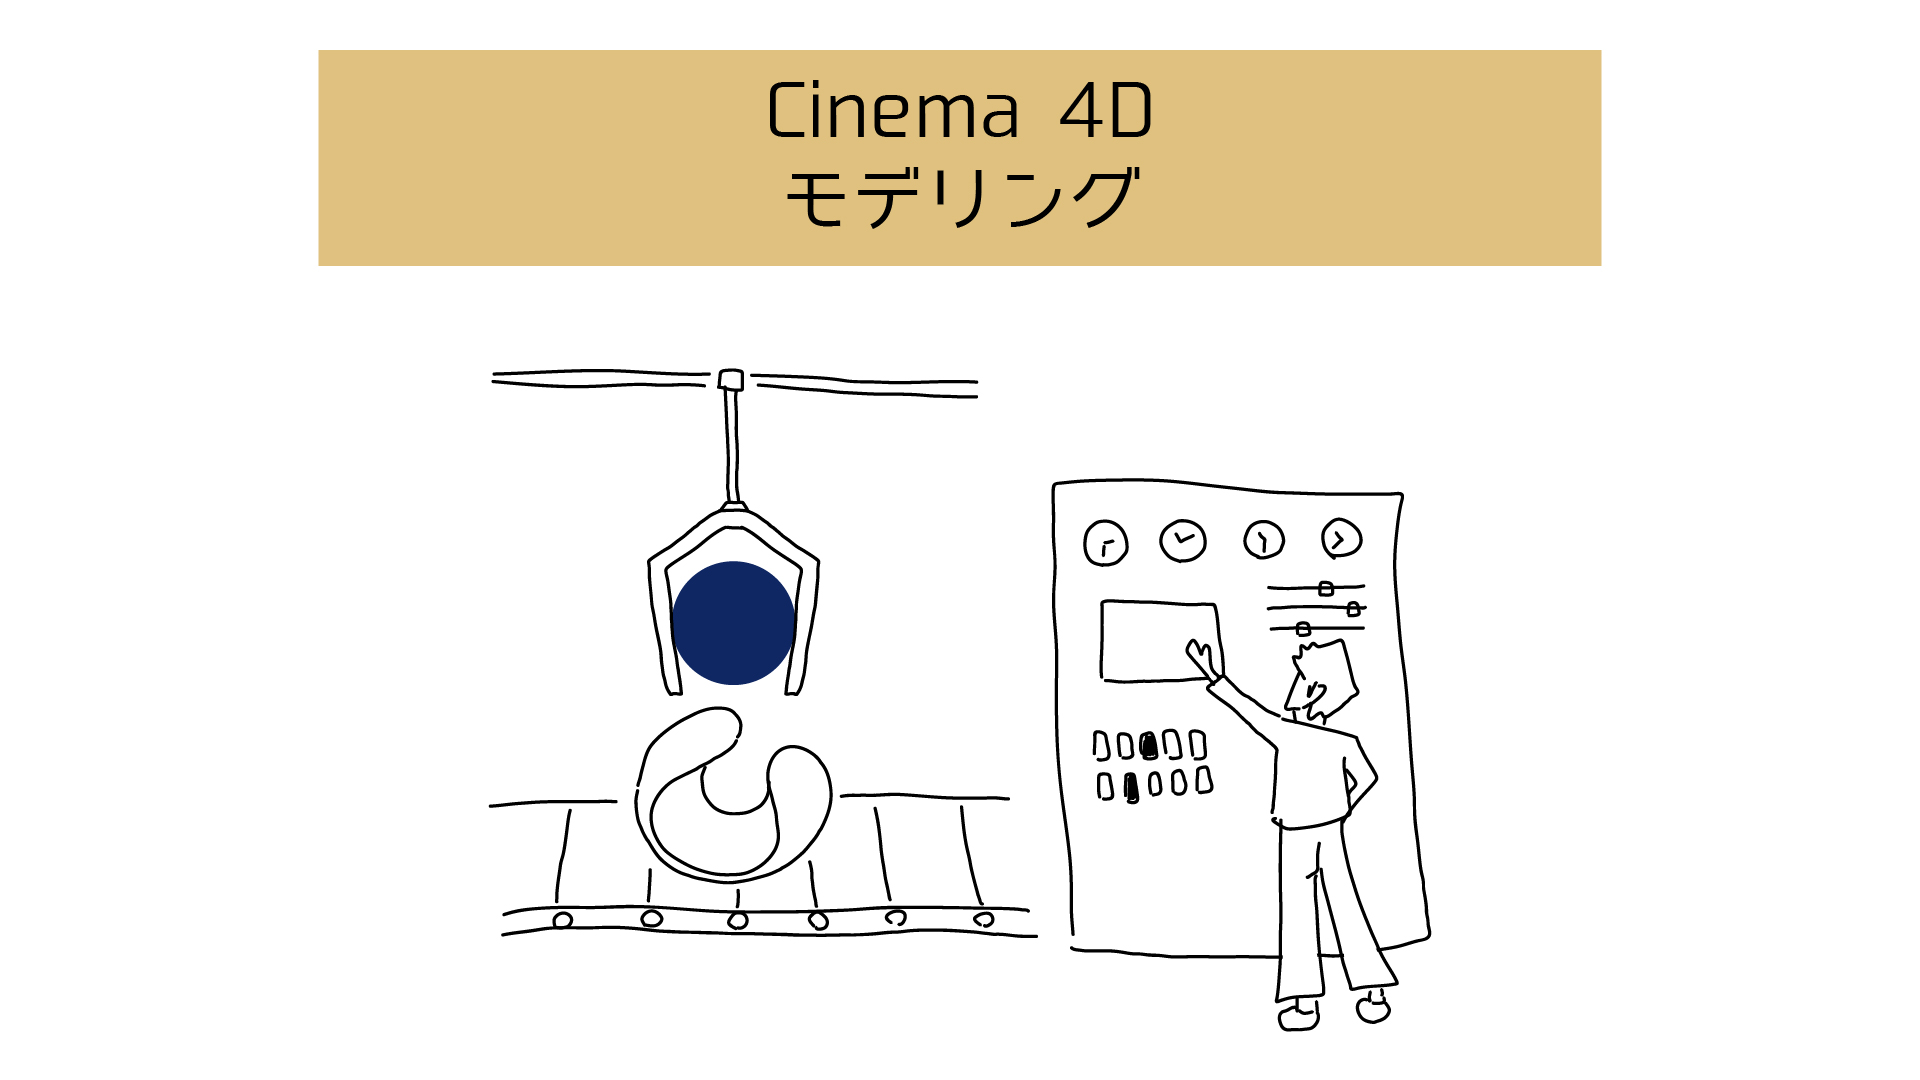 【Cinema 4Dでモデリング】始める前に知っておくべき基本用語と各種ツールまとめ 